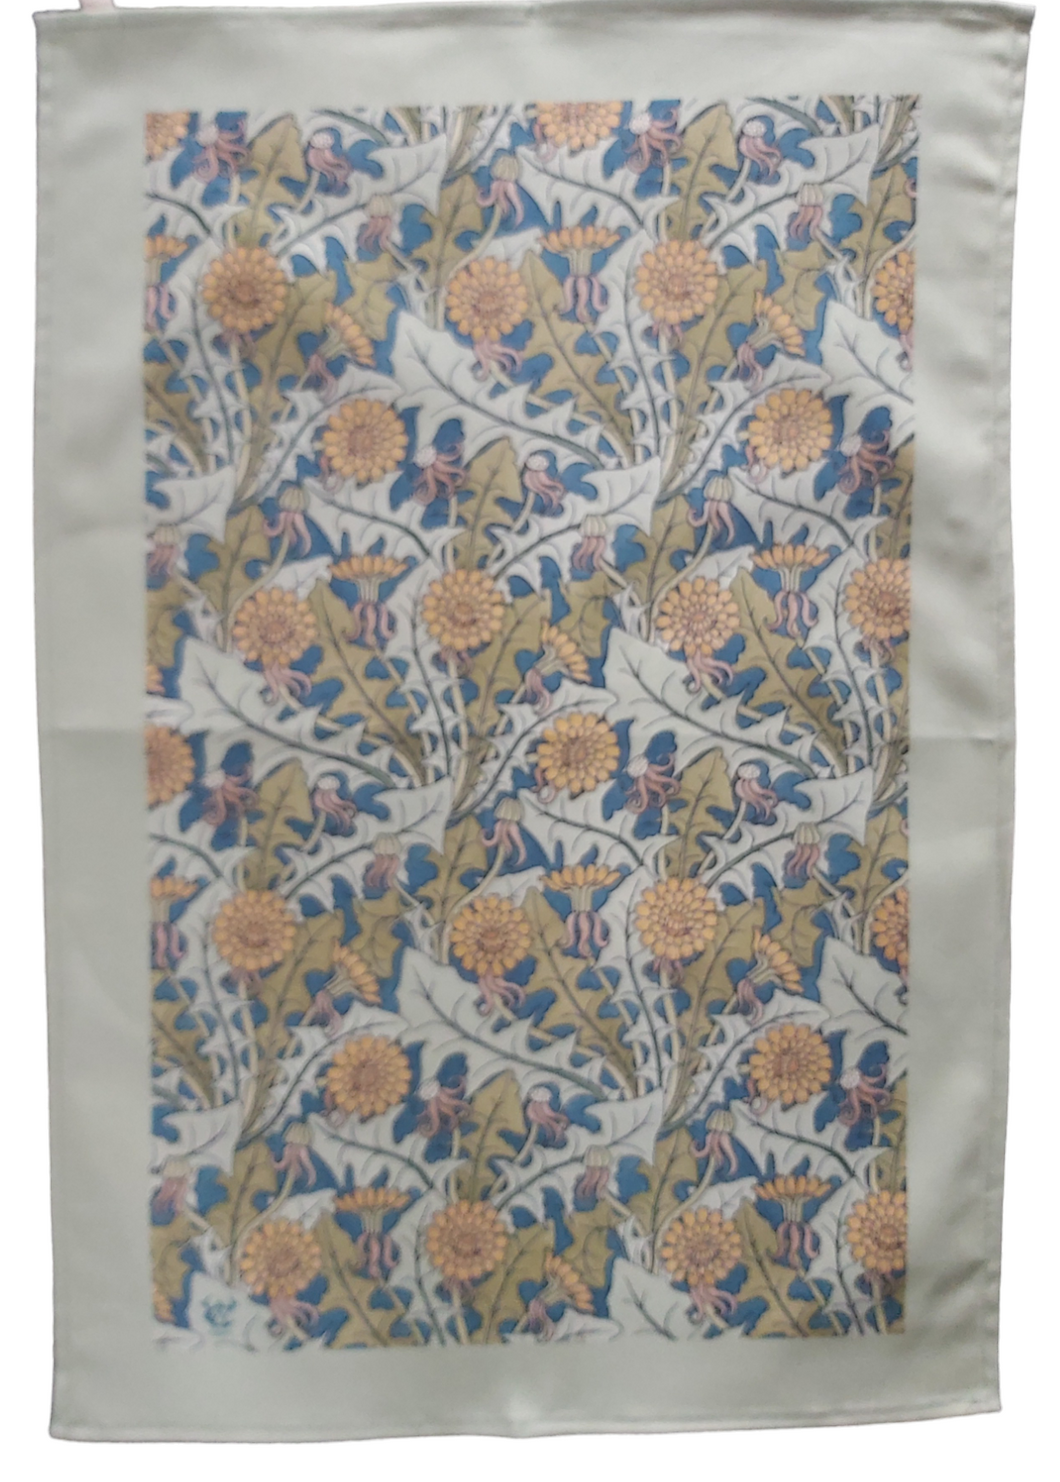 Dandelion Art Nouveau Tea Towel Antique Botanical Print 100% Cotton